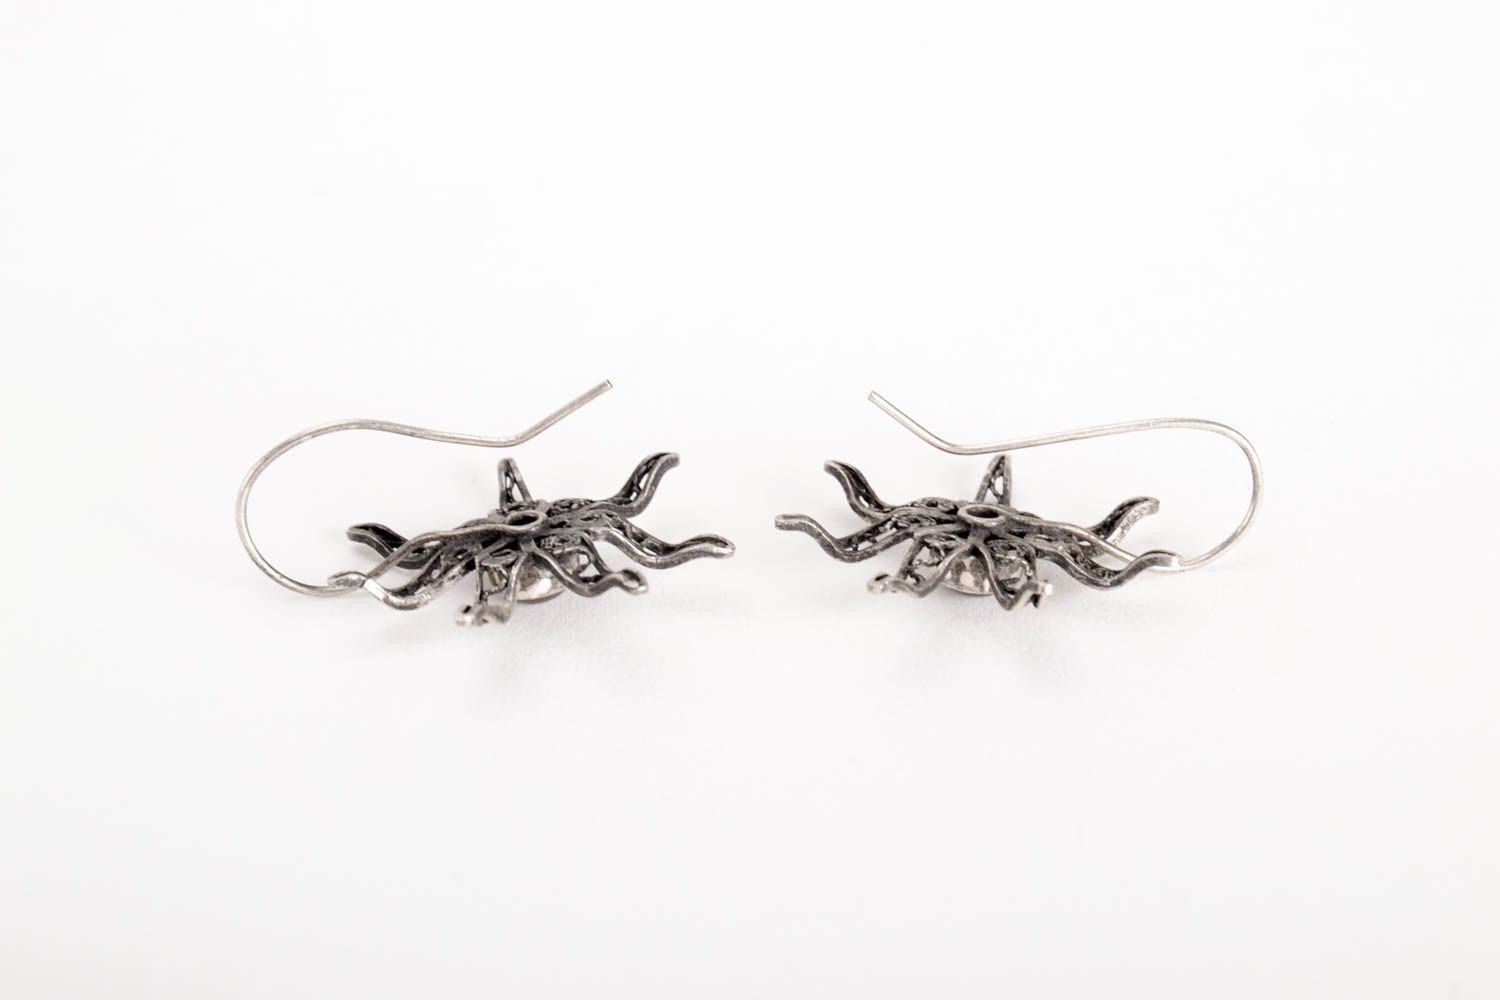 Handmade silver earrings unusual silver earrings gift for women silver jewelry photo 3